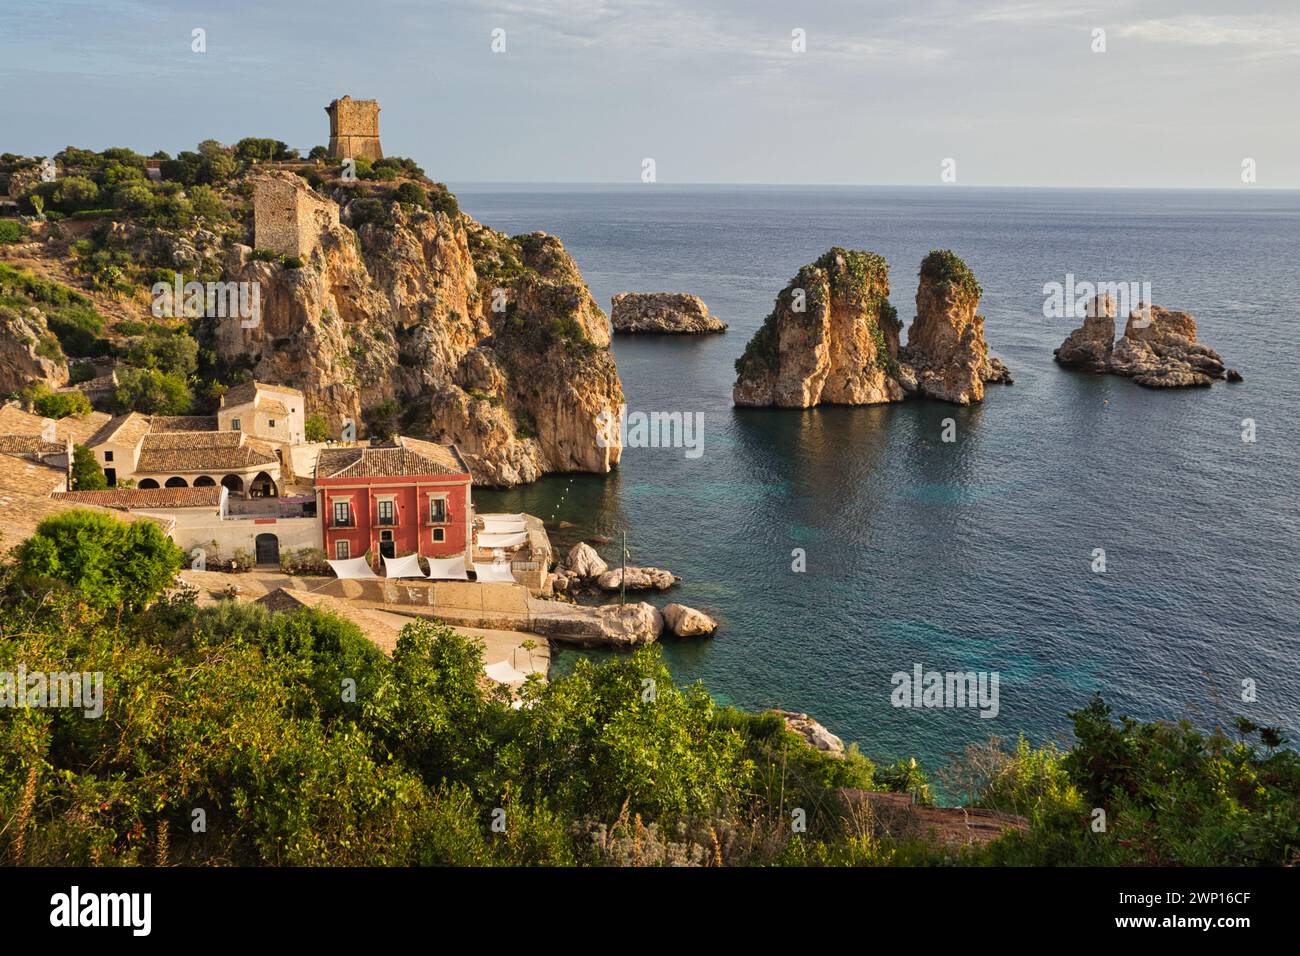 Tonnara di Scopello, Sizilien, früh am Morgen mit den faraglioni, Felsentürmen, im Meer und Verteidigungsturm auf dem Hügel Stockfoto